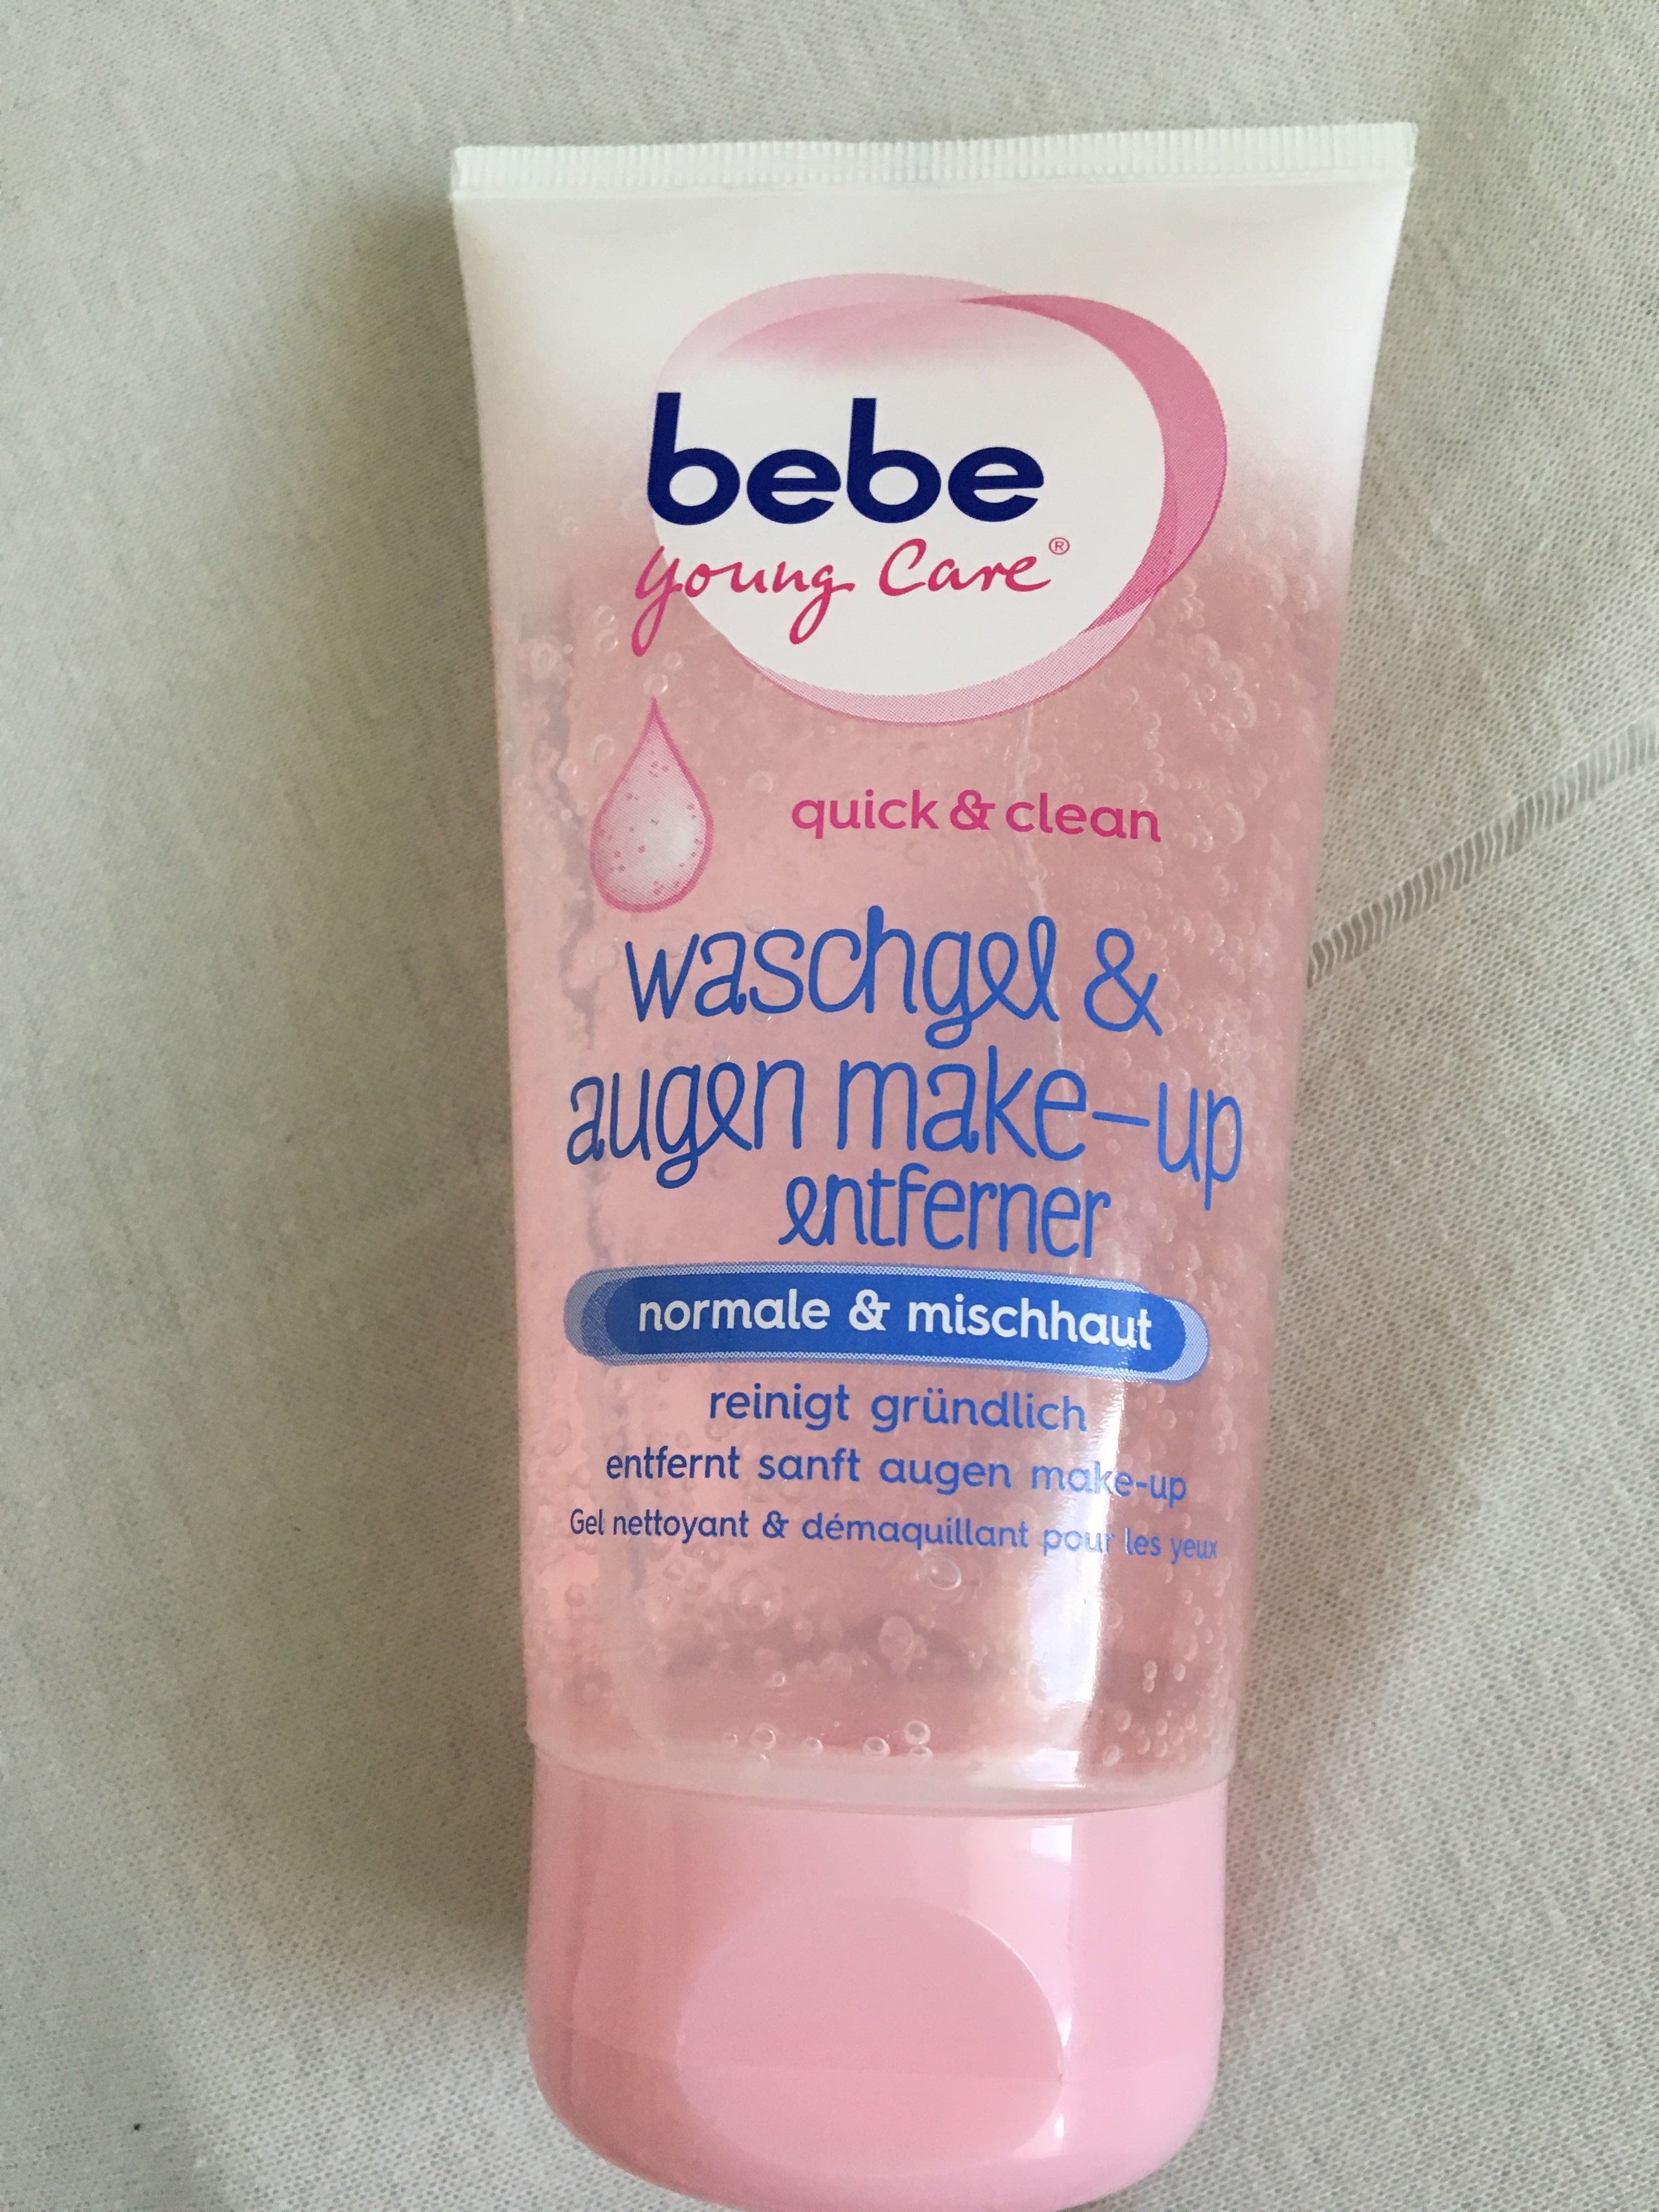 Washgel & augen make-up entferner - Product - fr